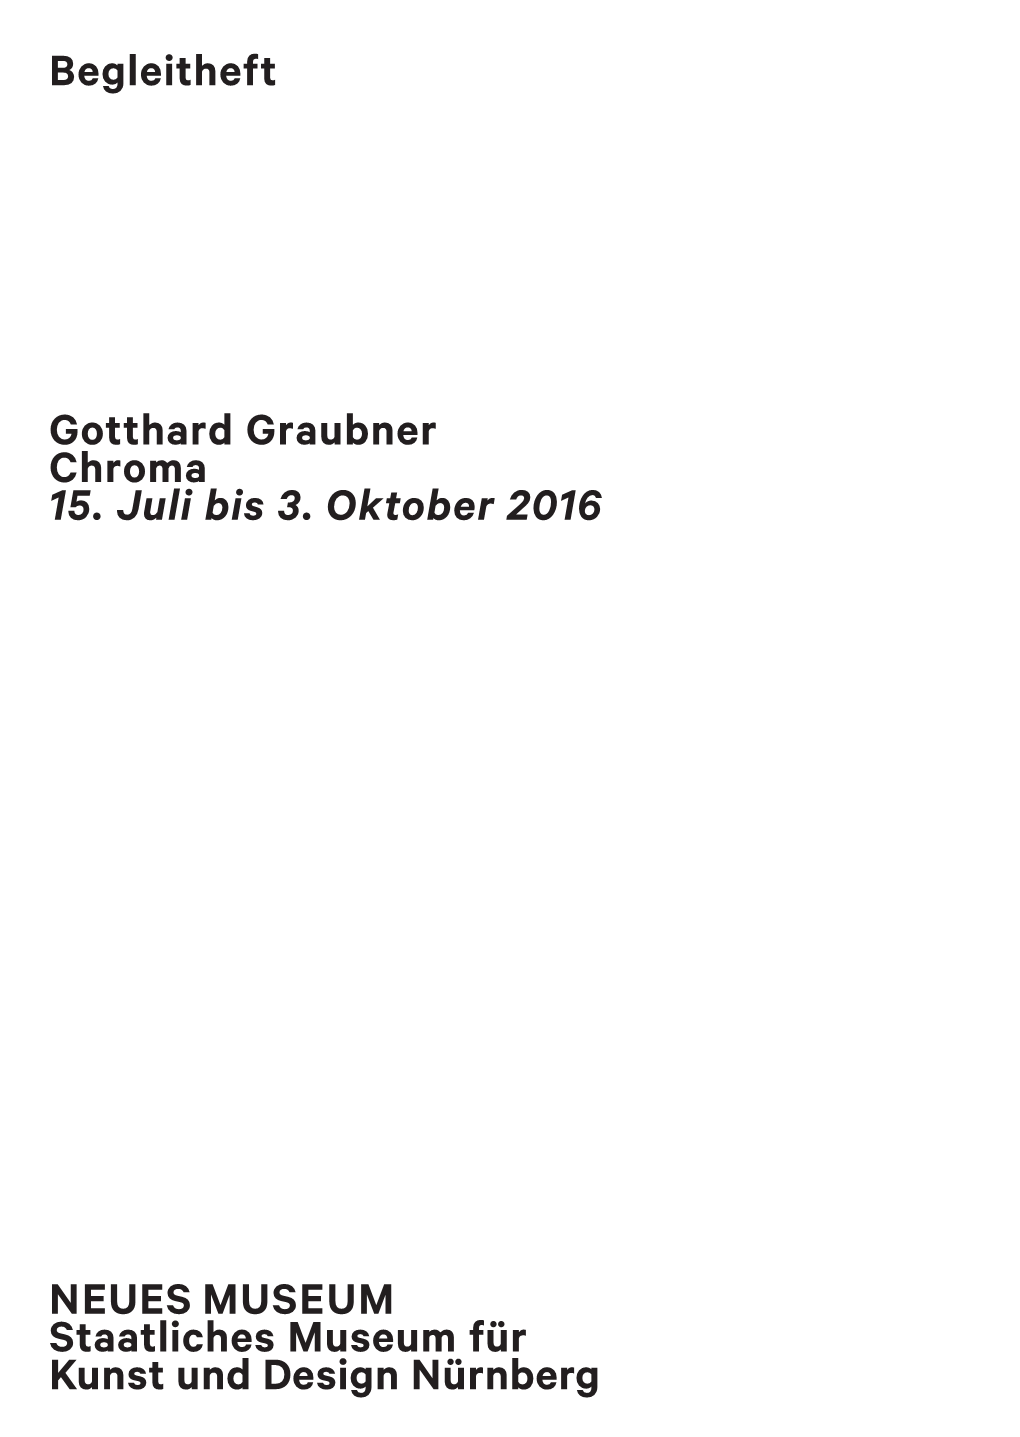 Gotthard Graubner Chroma 15. Juli Bis 3. Oktober 2016 Begleitheft